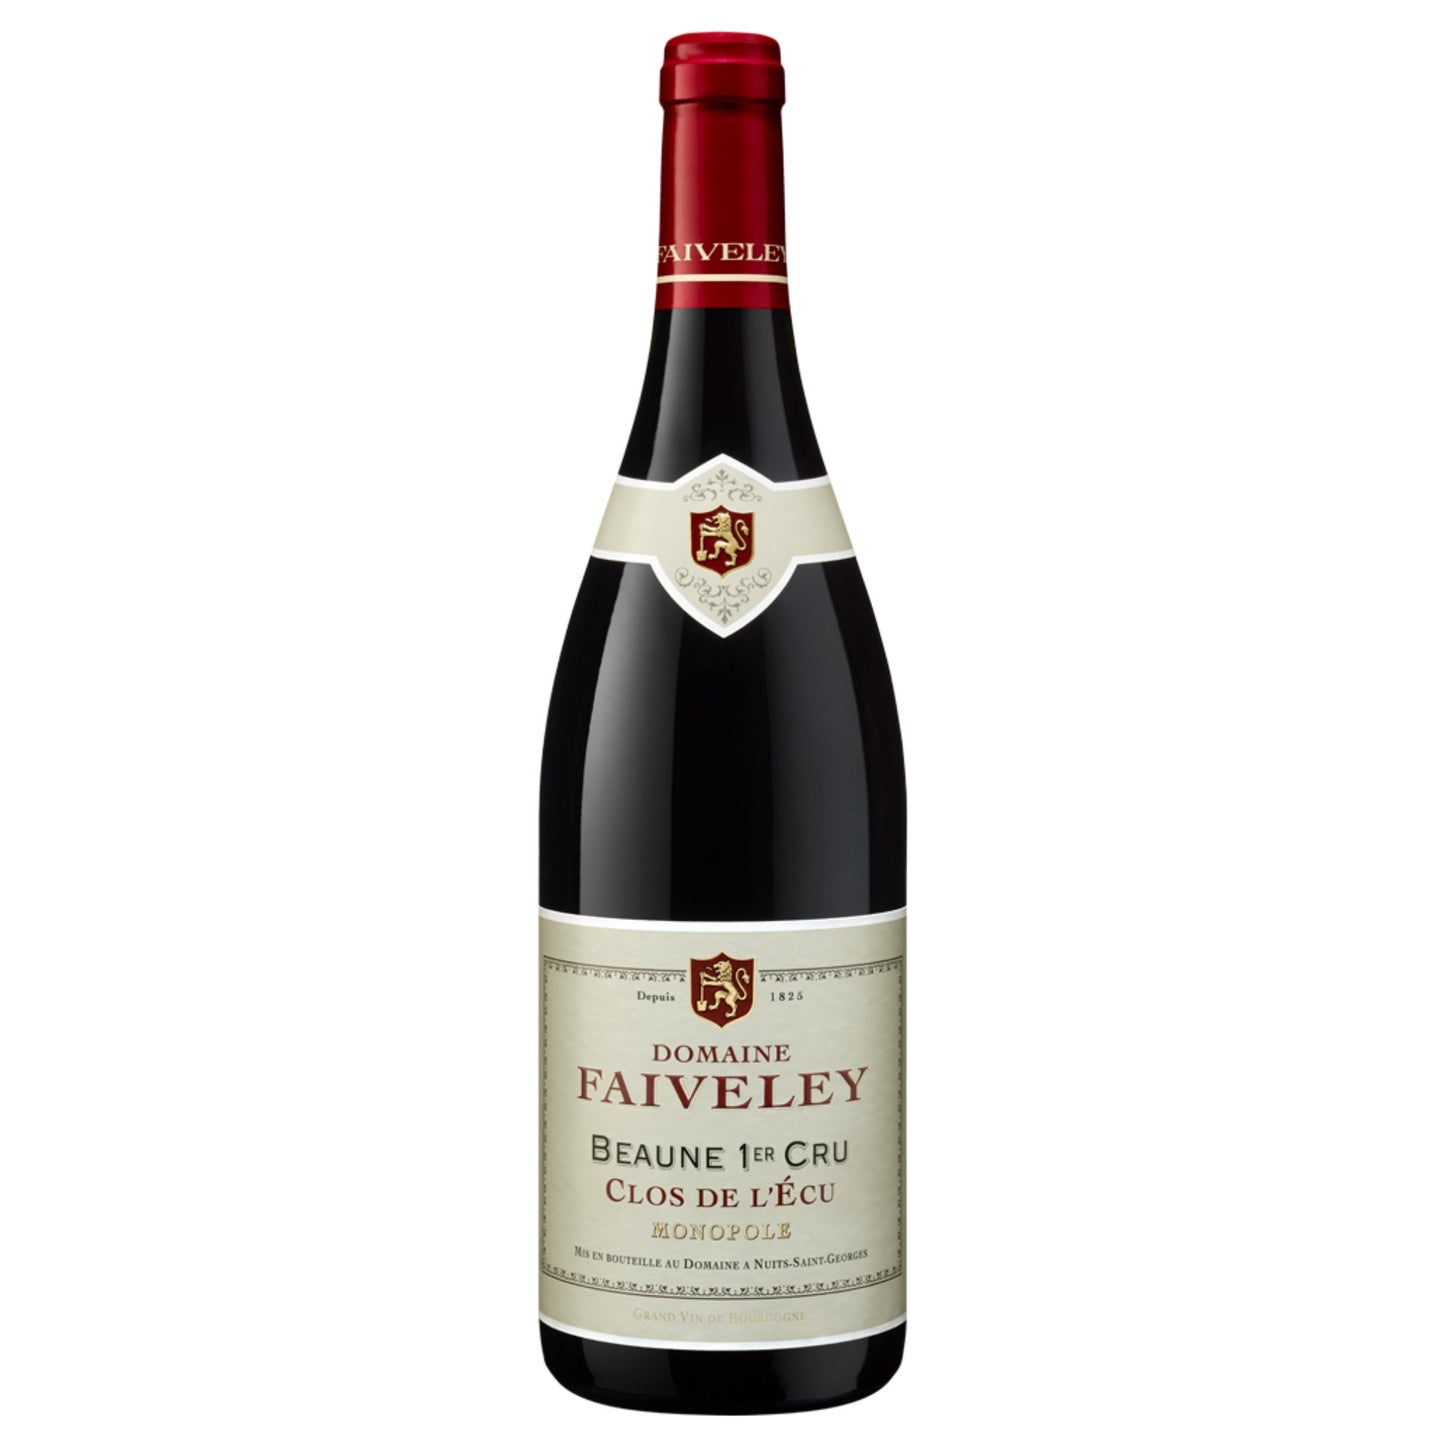 Faiveley Beaune 1er Cru "Clos de L'Ecu" Monopole - Grand Vin Pte Ltd